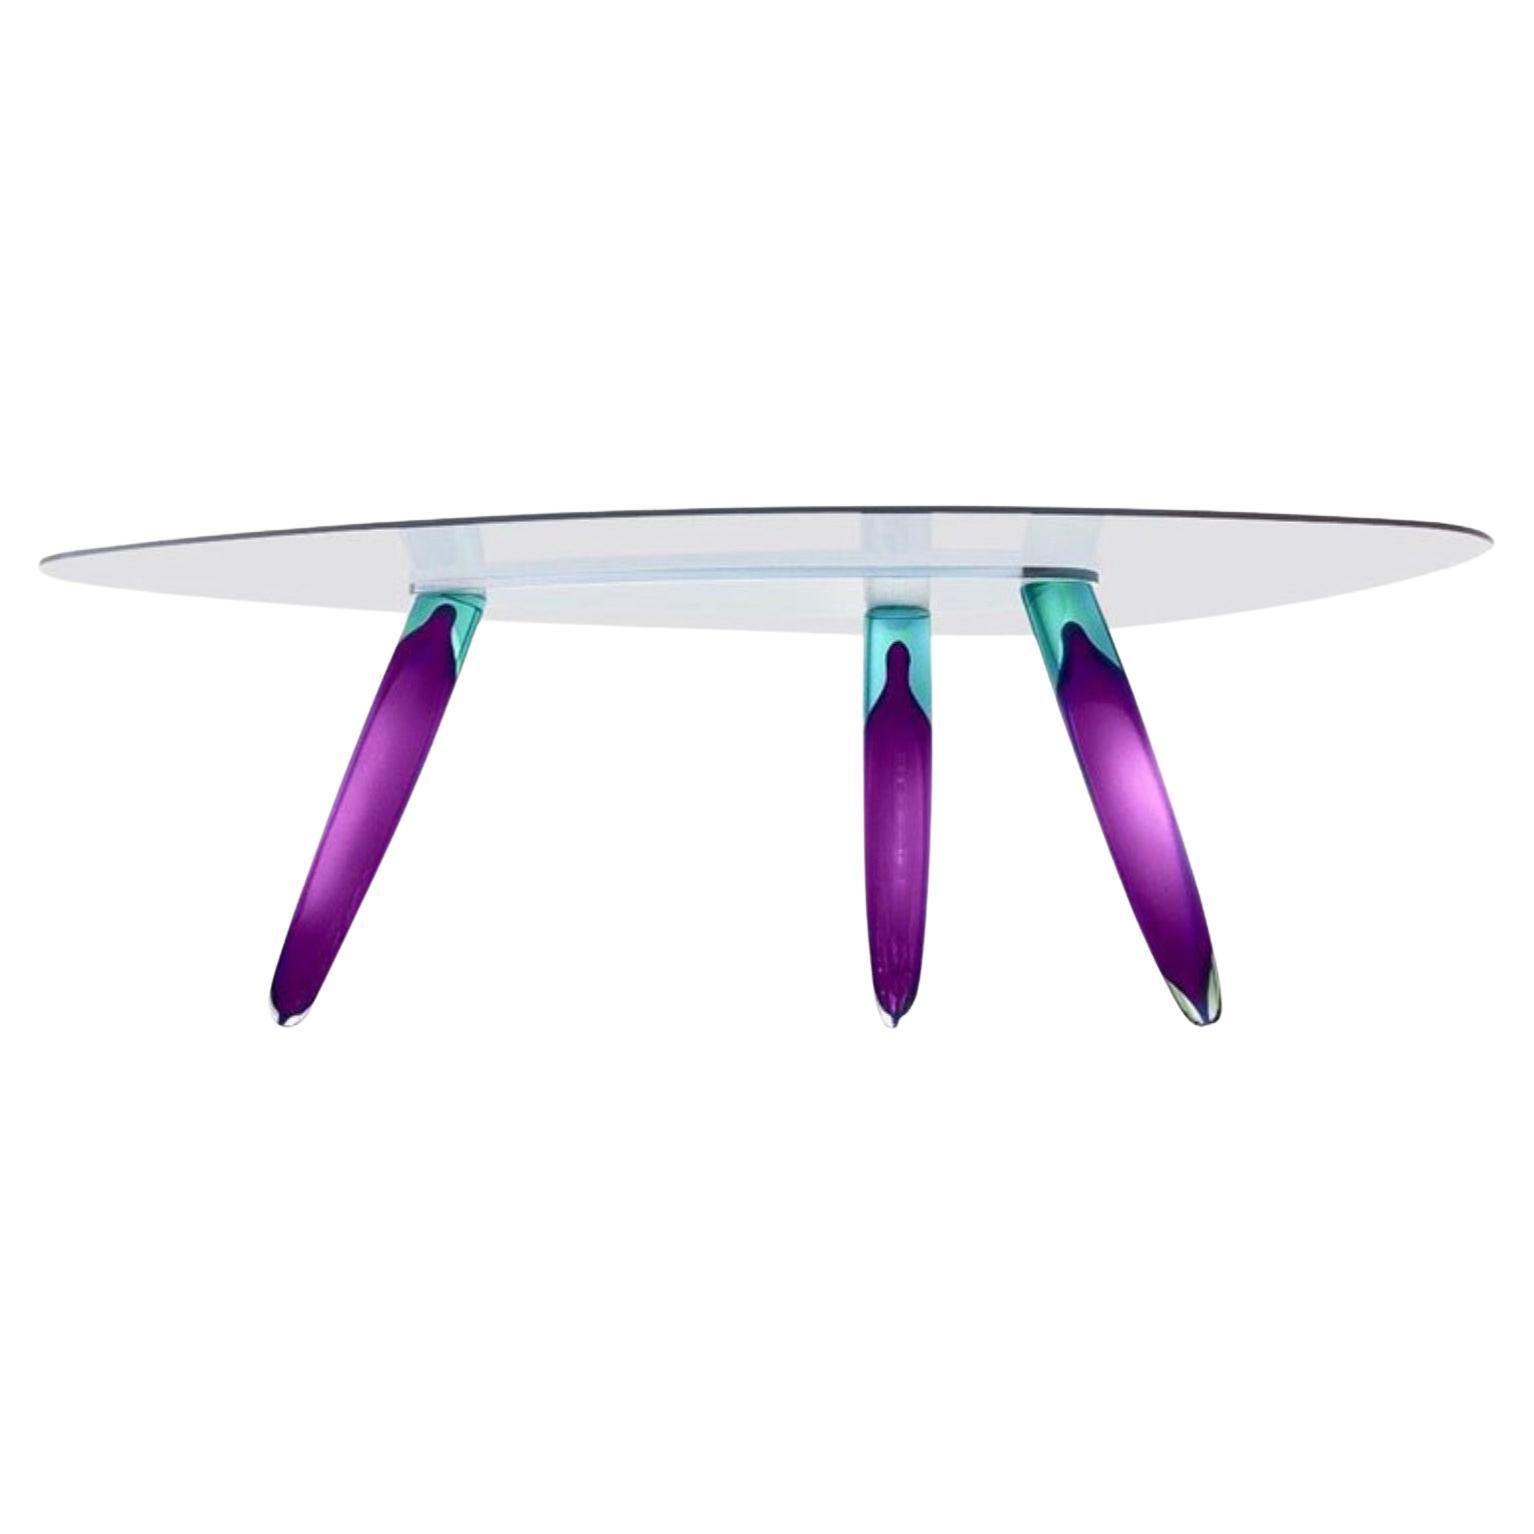 Roche Bobois Murano Art Glass Dining Table by Maurice Barilone, Purple & Blue, Ein von Maurice Barilone für Roche Bobois, Paris, entworfener Murano-Esstisch mit drei Beinen aus zweifarbigem mundgeblasenem Glas, signiert am Fuß eines Beins, Maße: